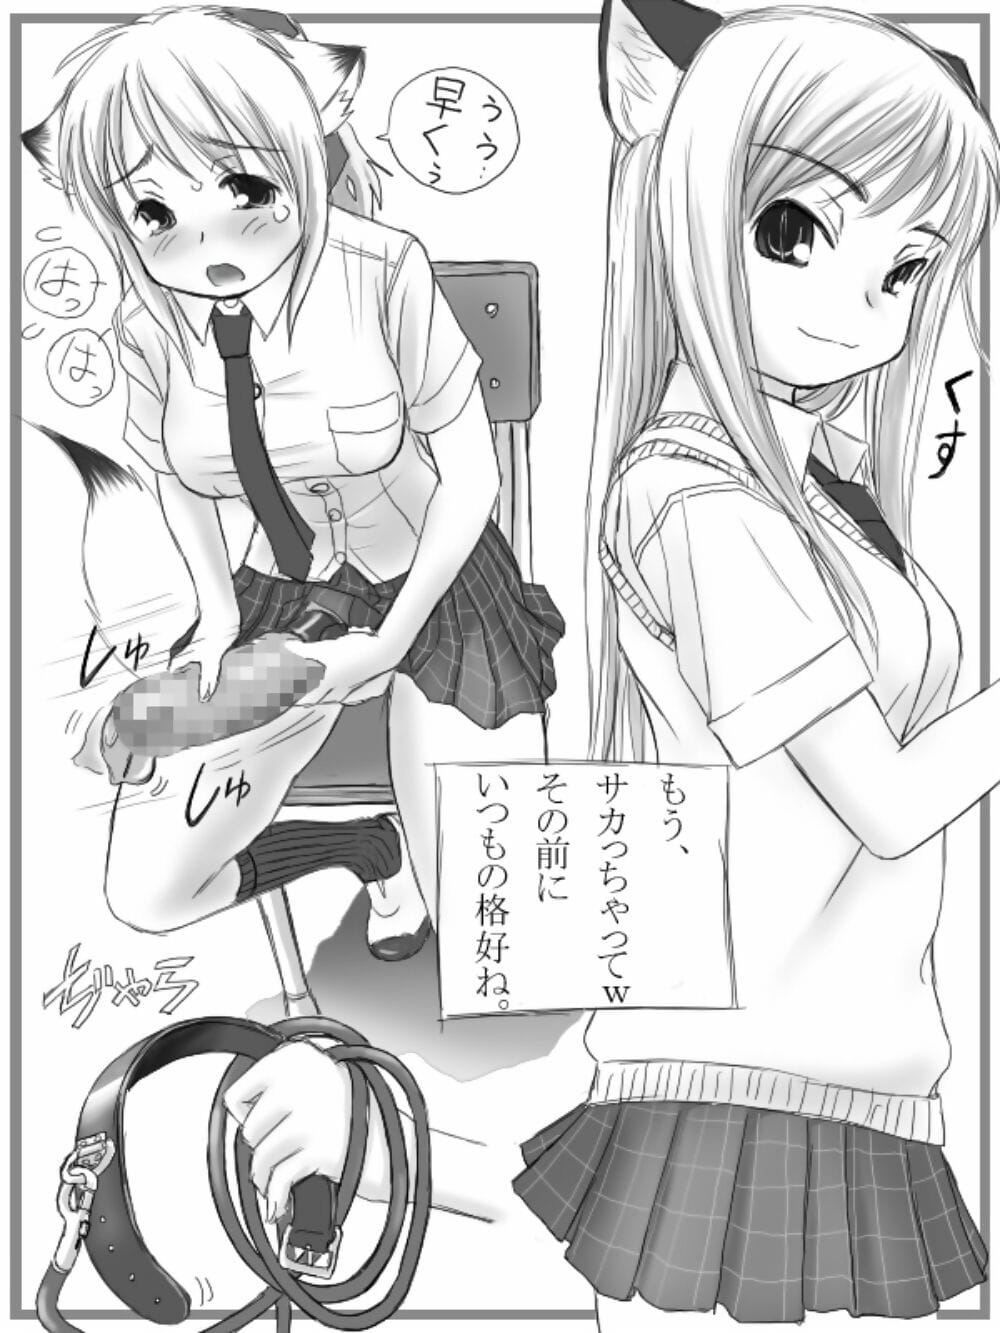 mui Garu mui Футанари San ilustracja hsiu + uzupełnieniem Manga cyfrowy część 3